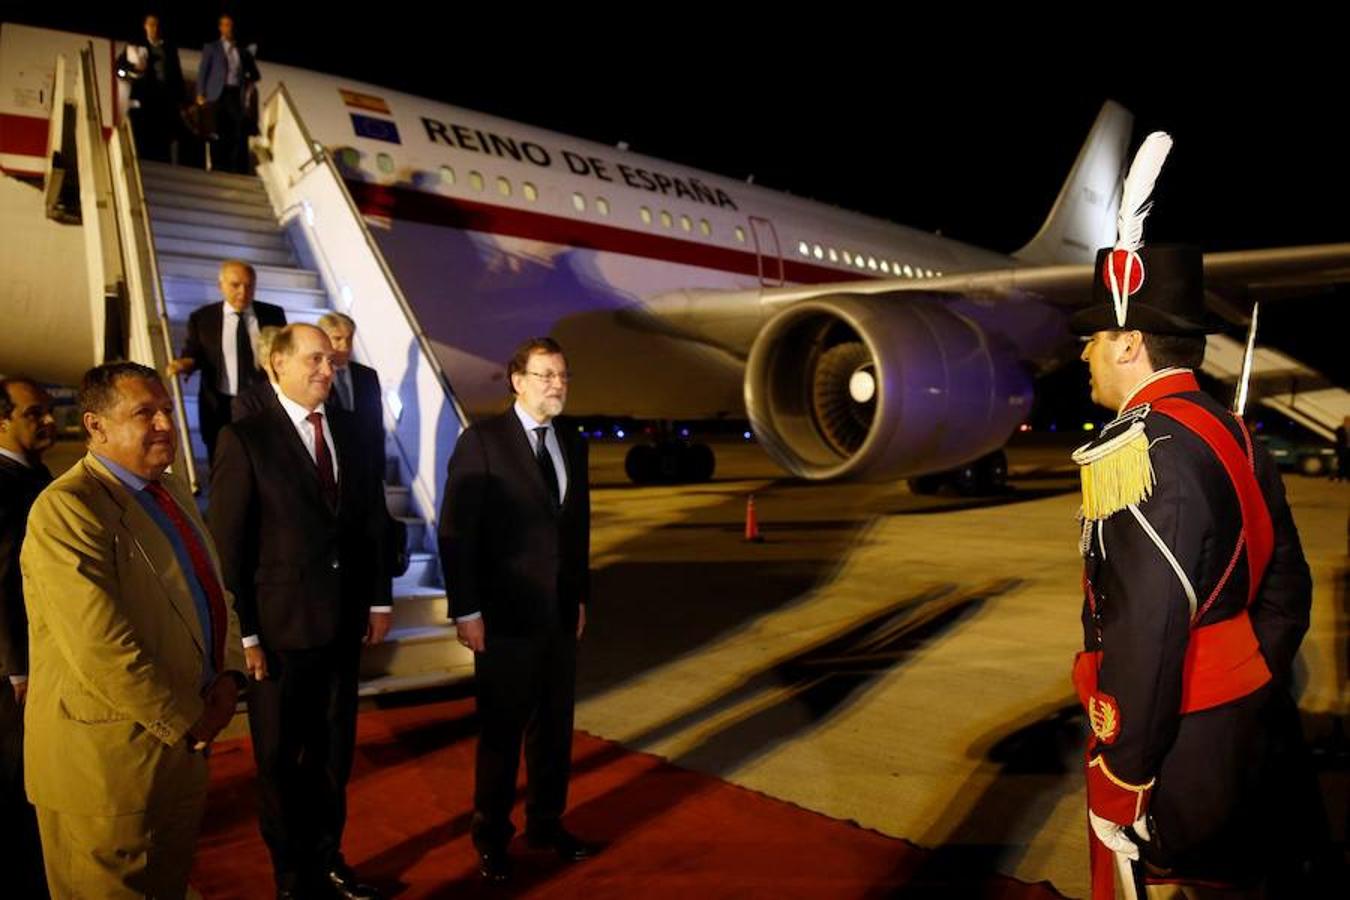 La visita de estado de Rajoy a Argentina, en imágenes. Rajoy llegó ayer lunes a Buenos Aires para iniciar la primera visita de un presidente español en 11 años.